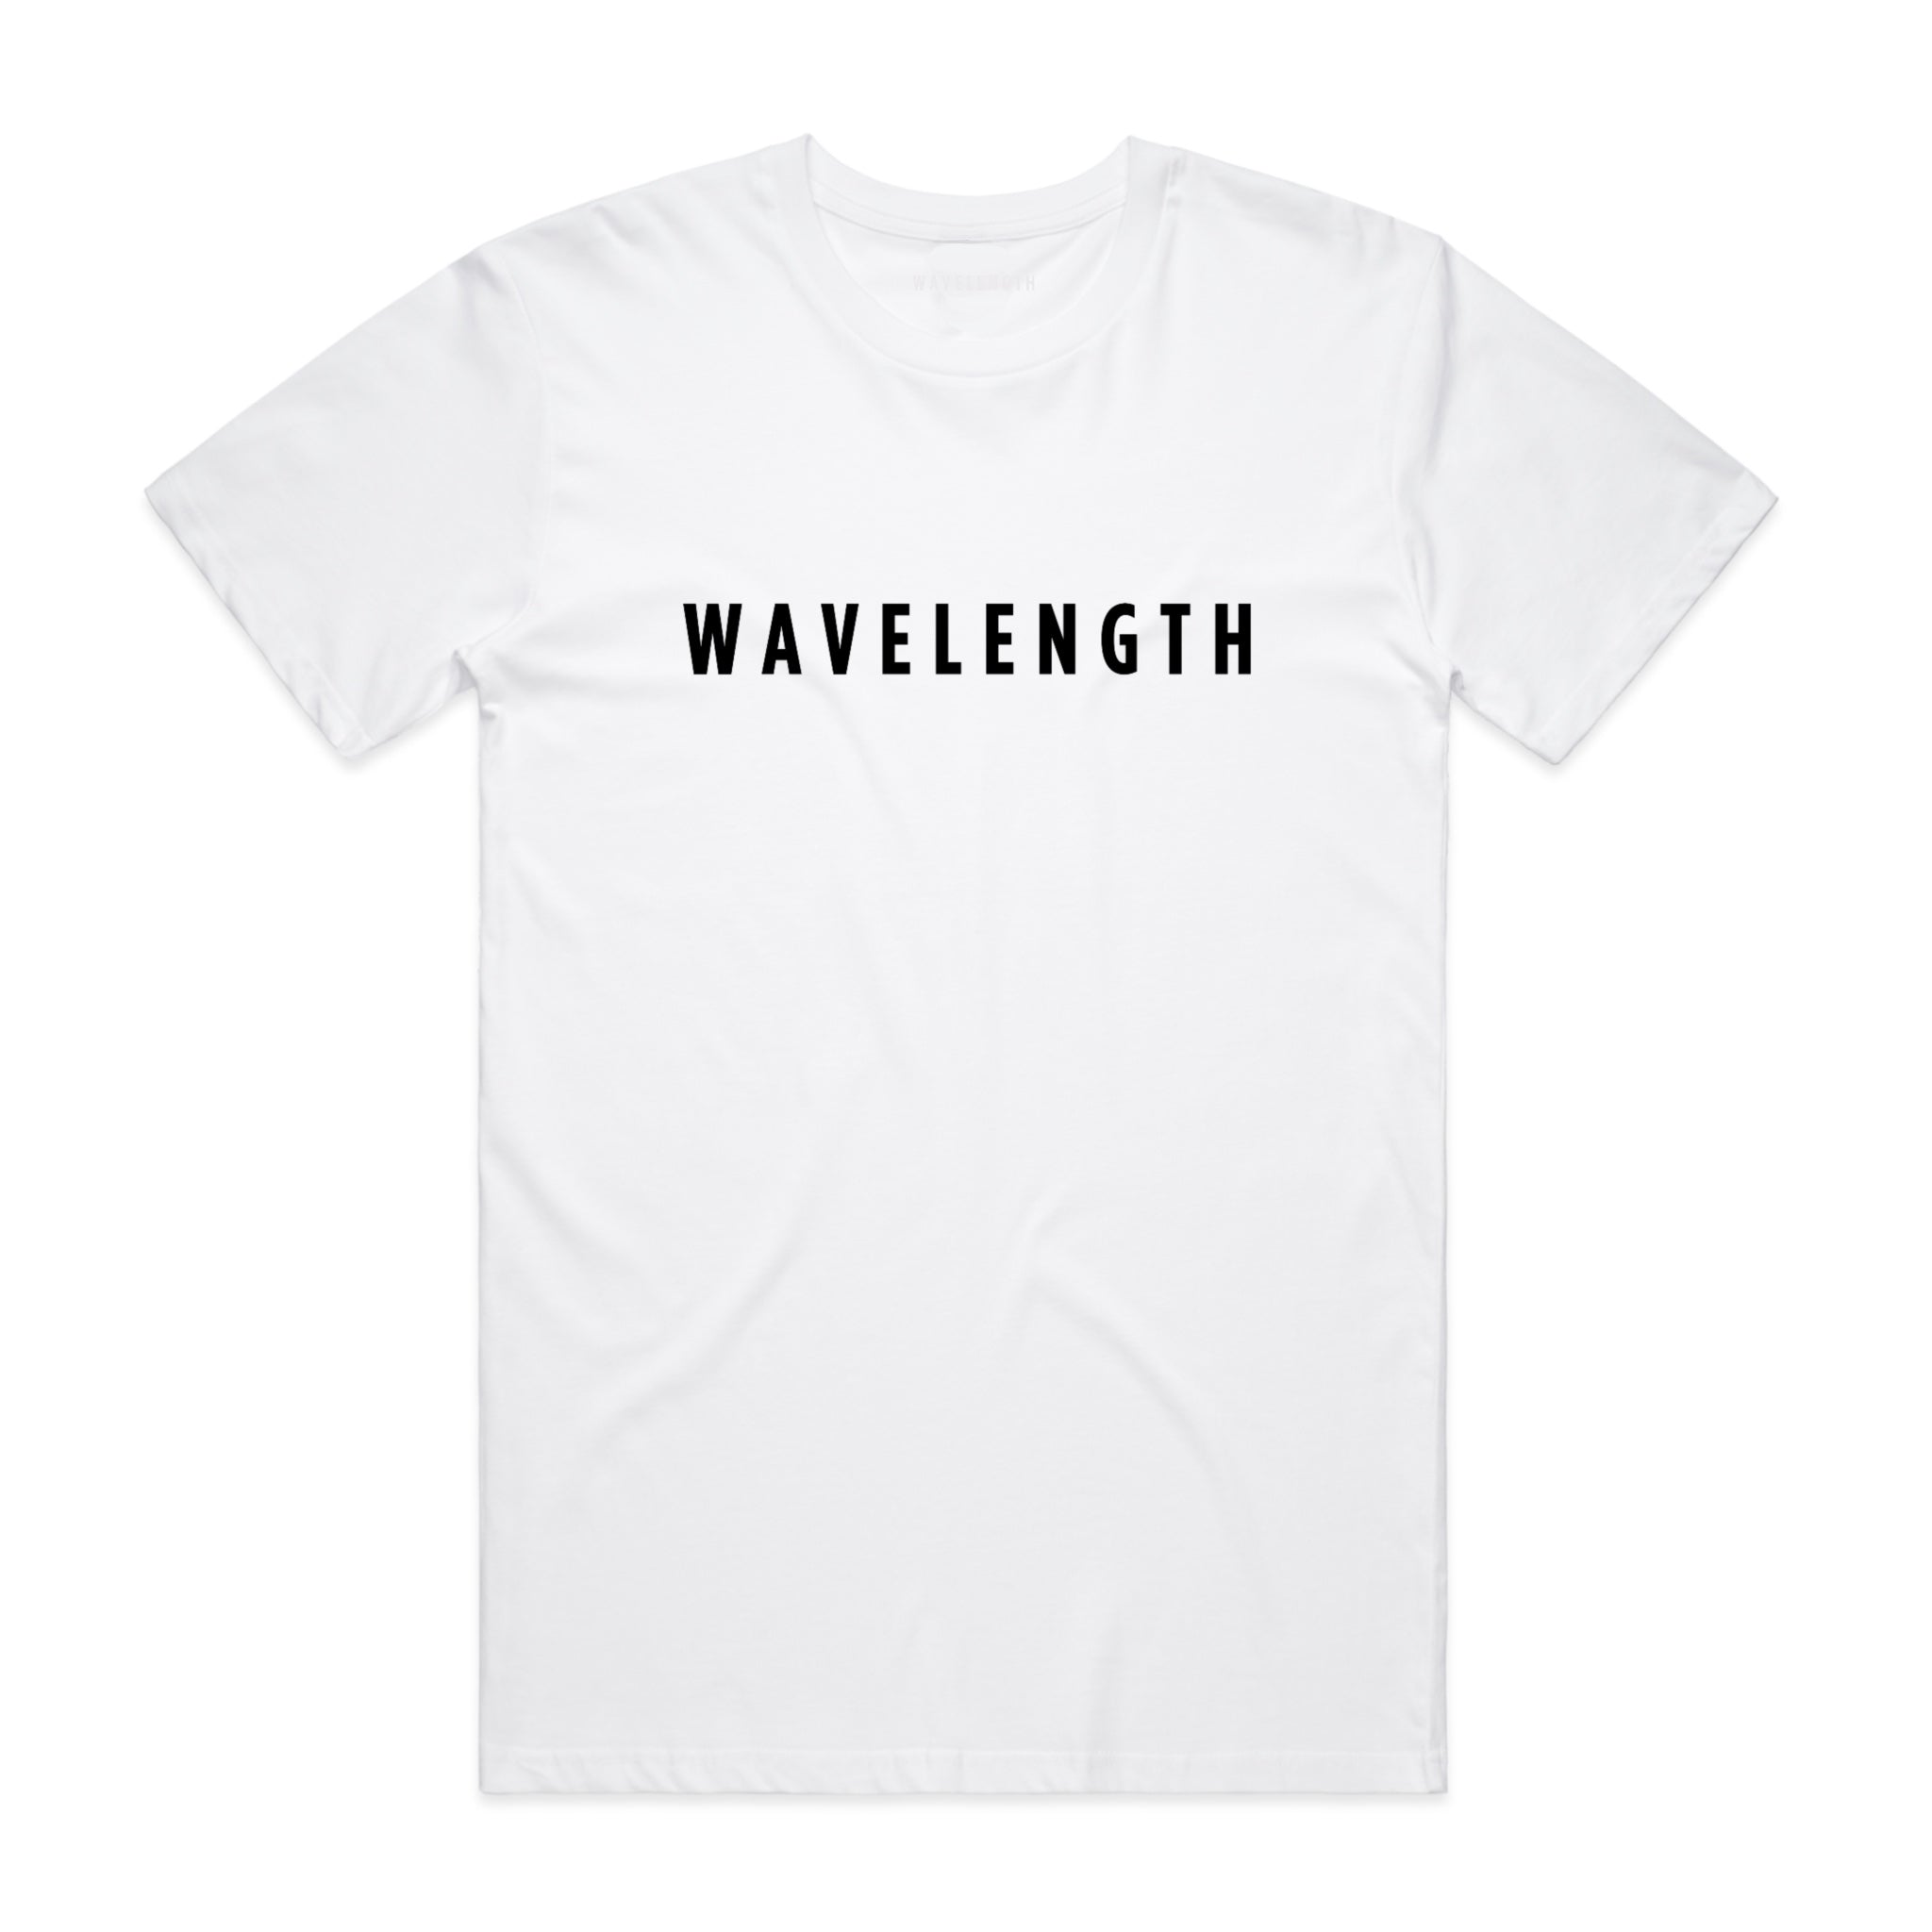 Wavelength Masthead T-shirt - White / Black